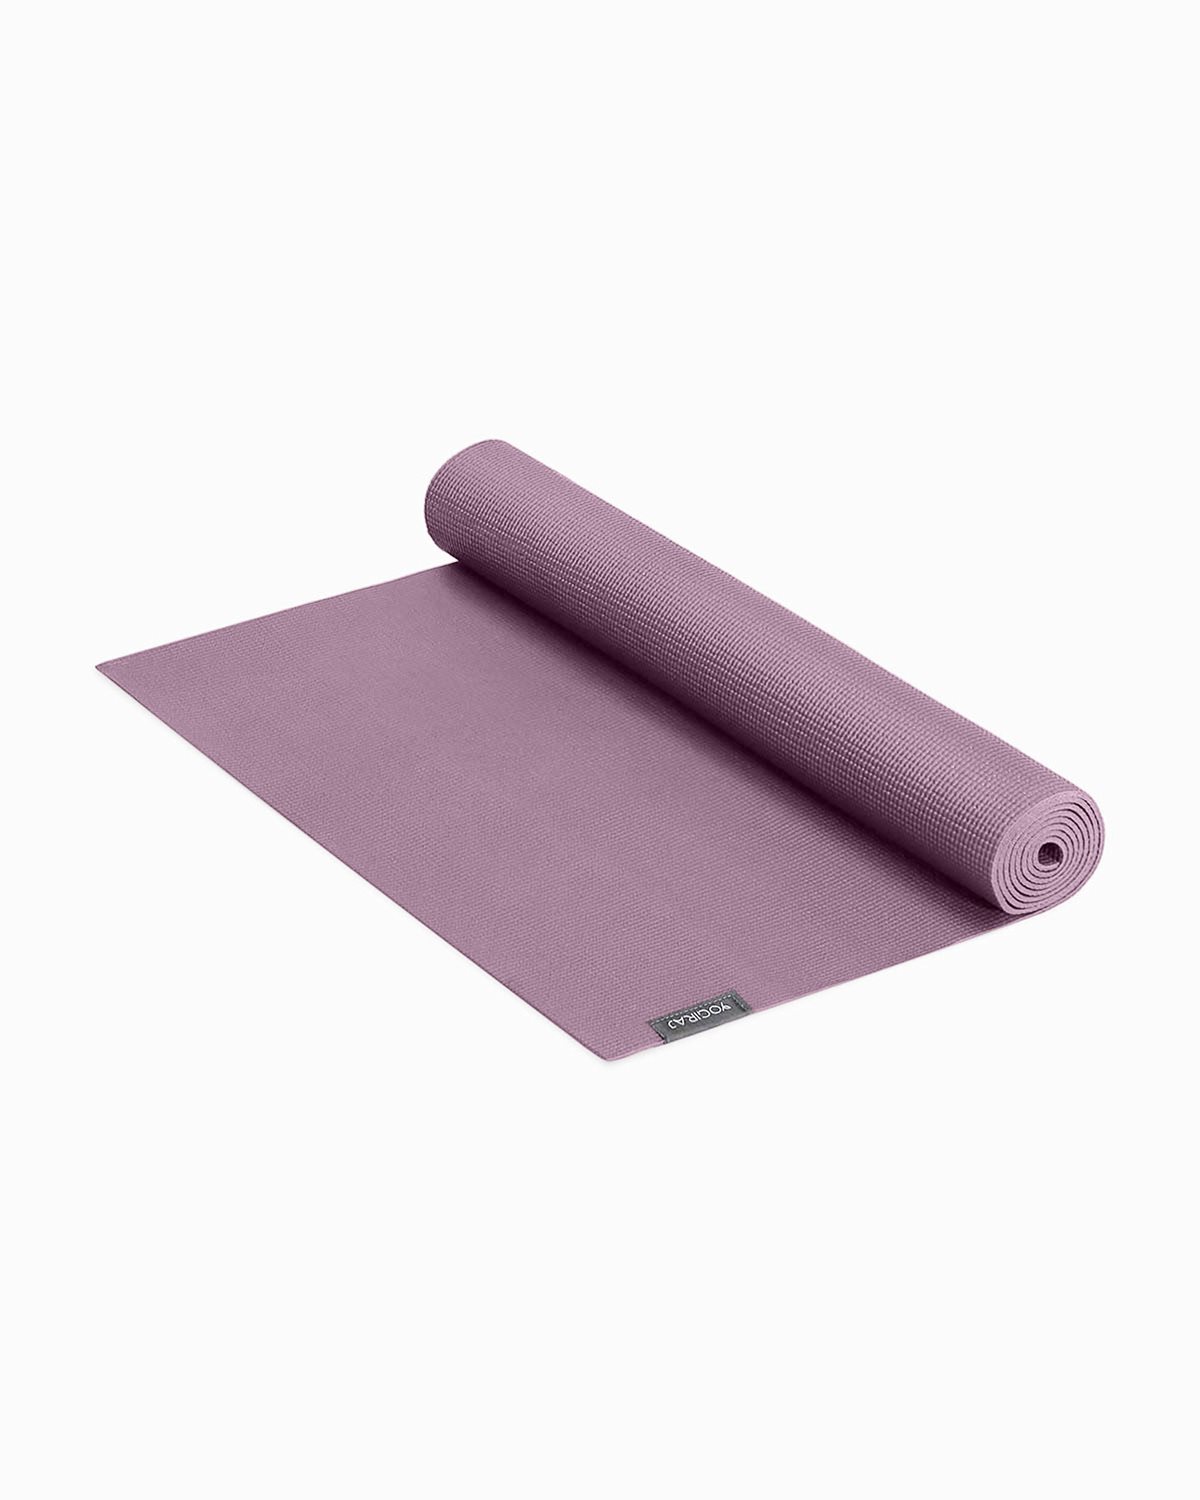 Yogiraj - All-round yoga mat, 4 mm, Mauve purple - Yogiraj